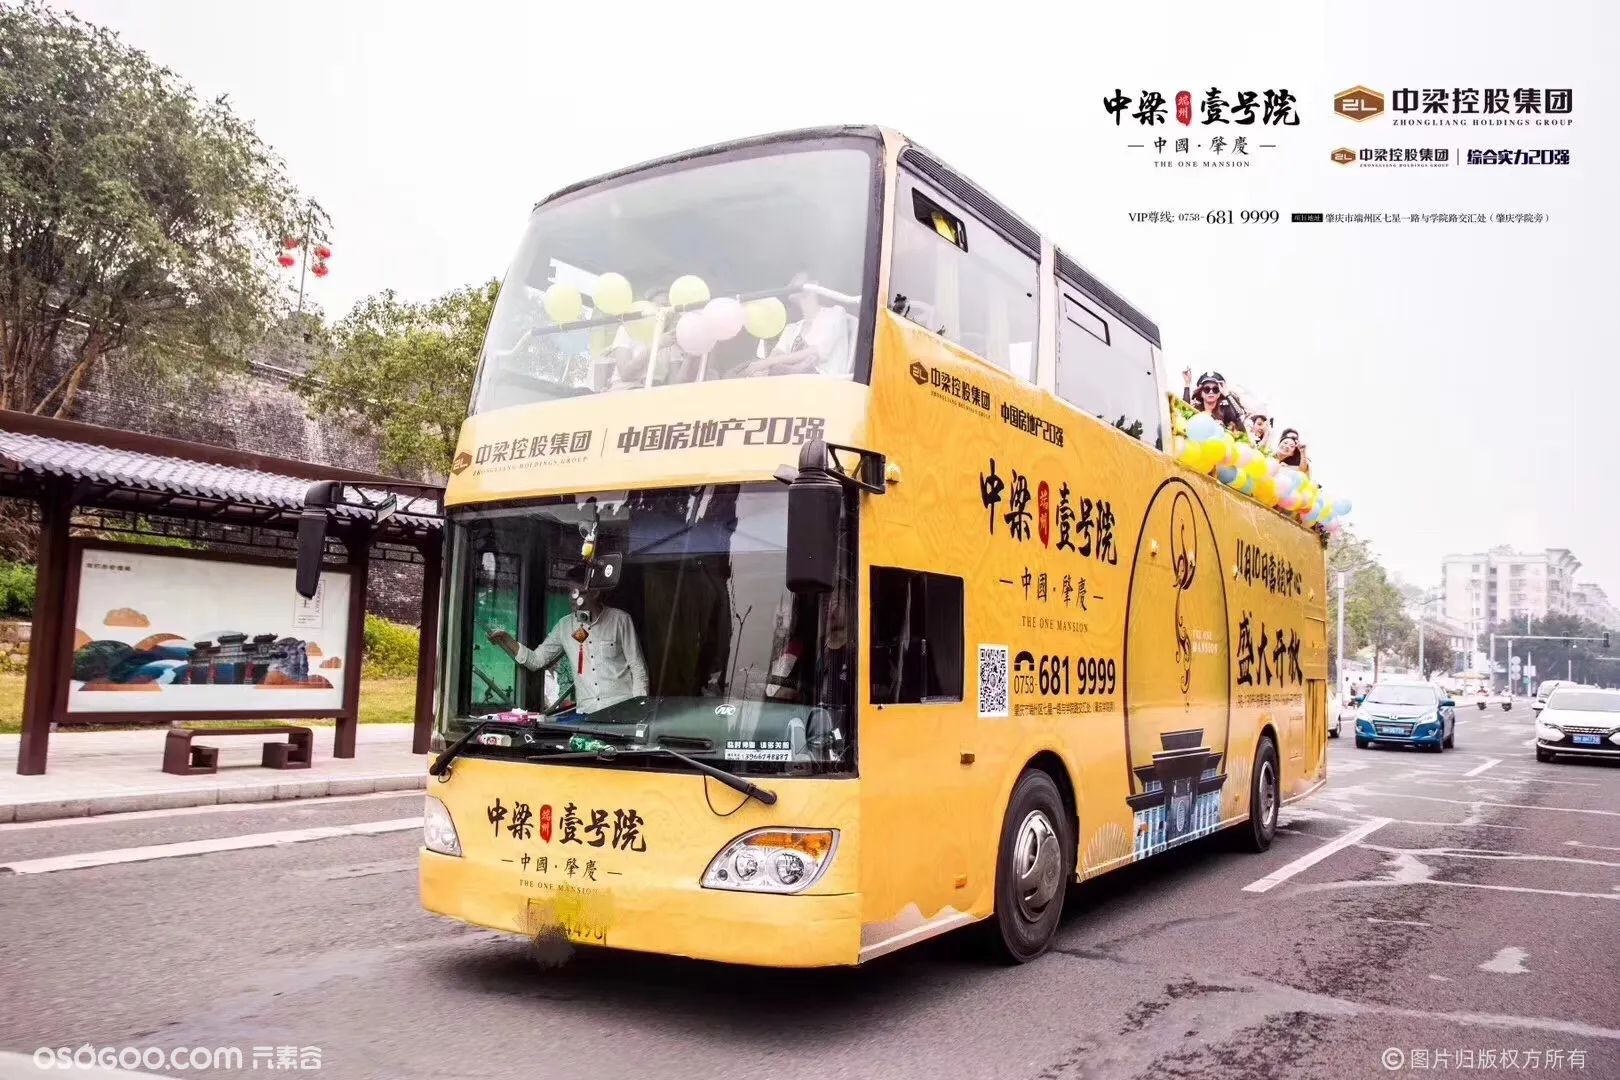 华东地区独家自购敞篷豪华版双层巴士 出租双层巴士巡游展览